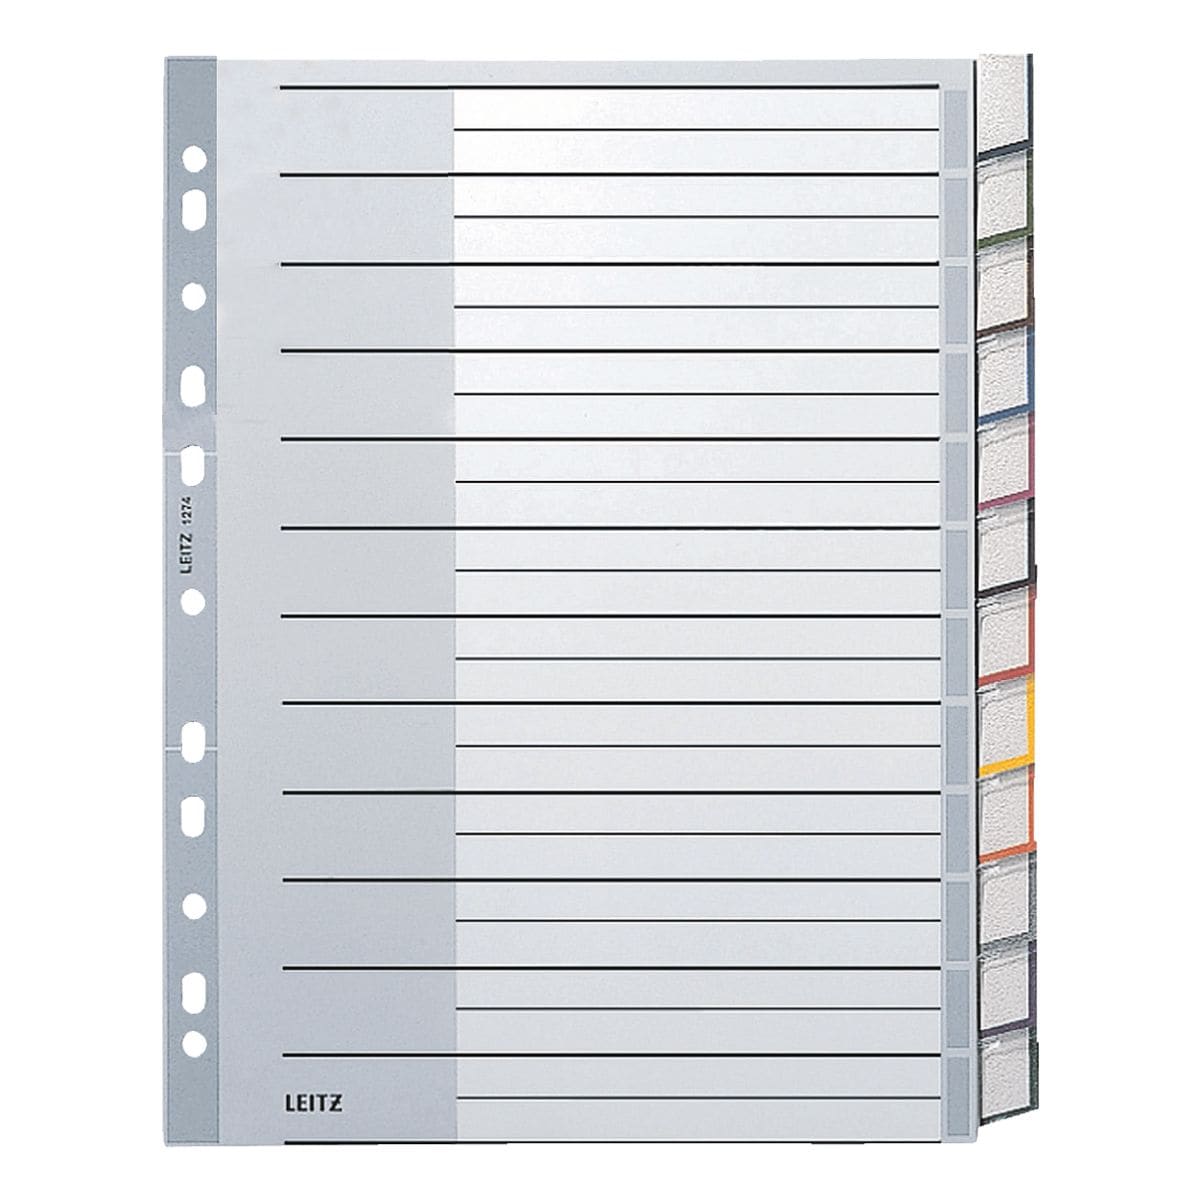 LEITZ Register 1274, A4 berbreit, mit Fenstertaben 12-teilig, grau / mehrfarbige Taben, Kunststoff